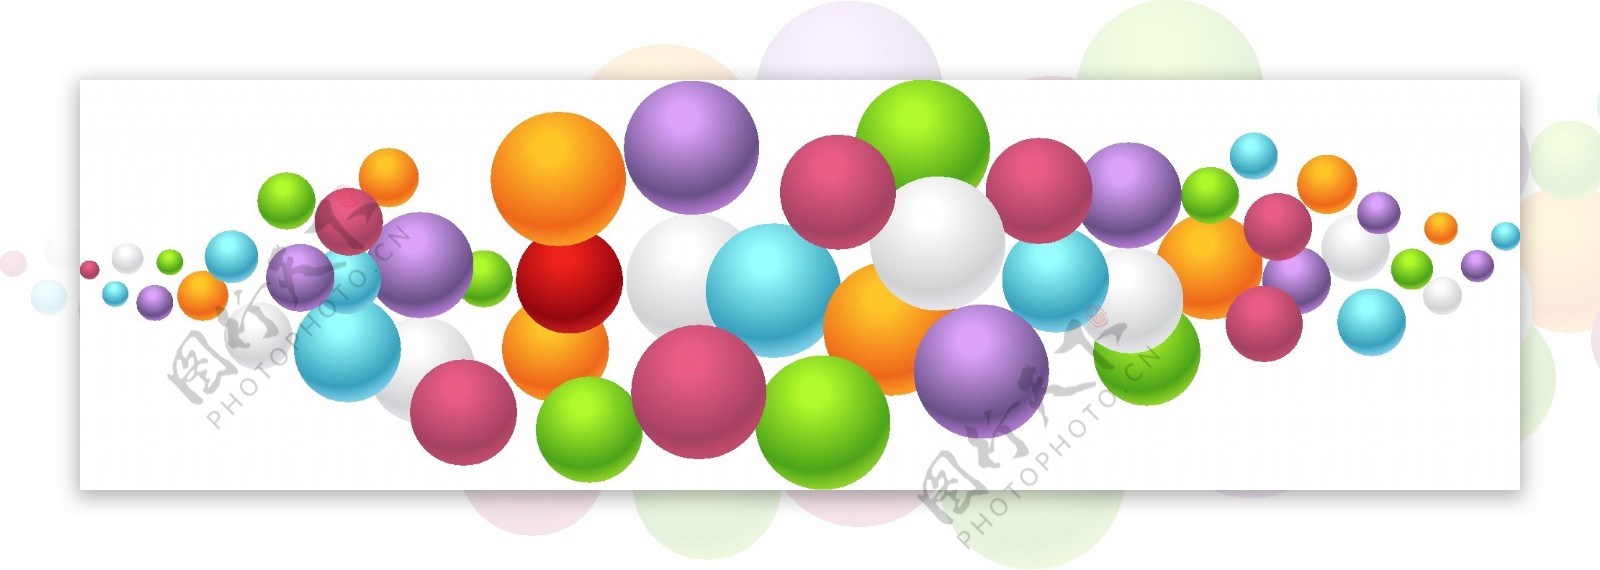 彩色圆球元素